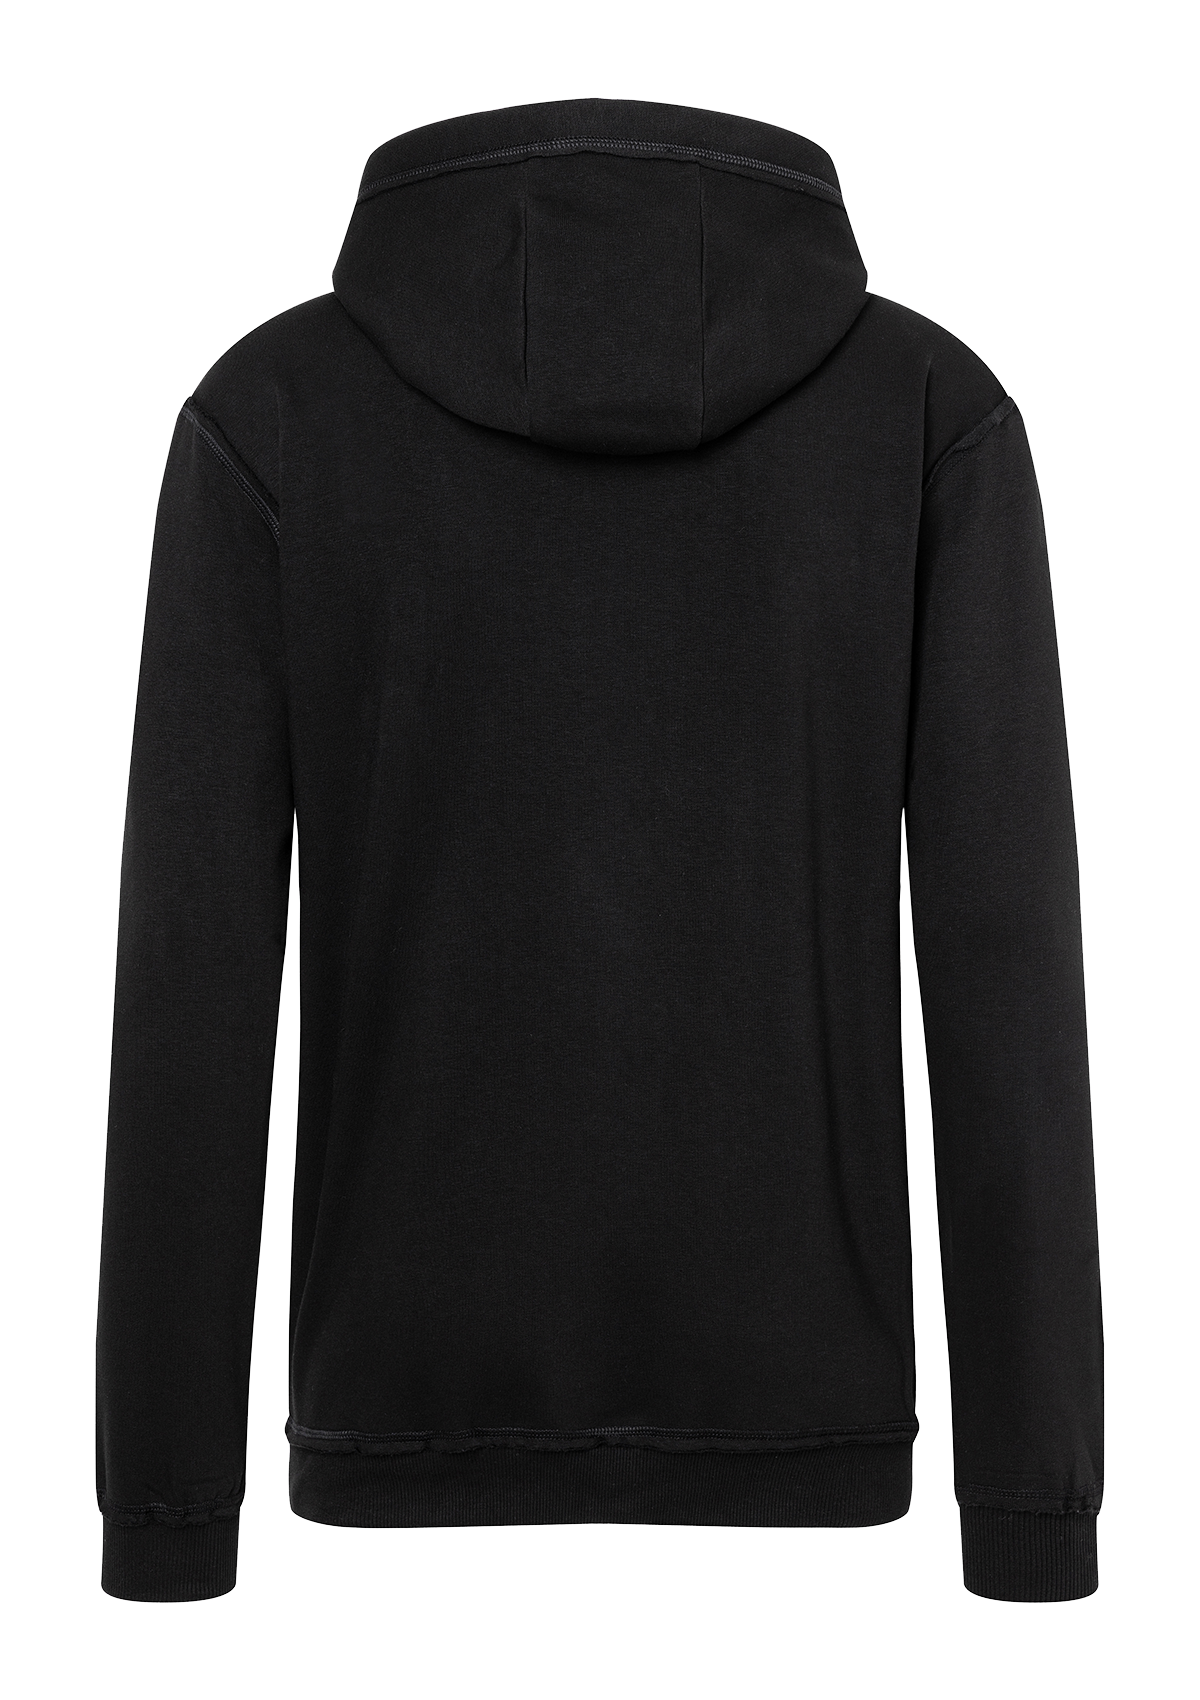 Unisex Hooded Sweatshirt ROCK CHEF®